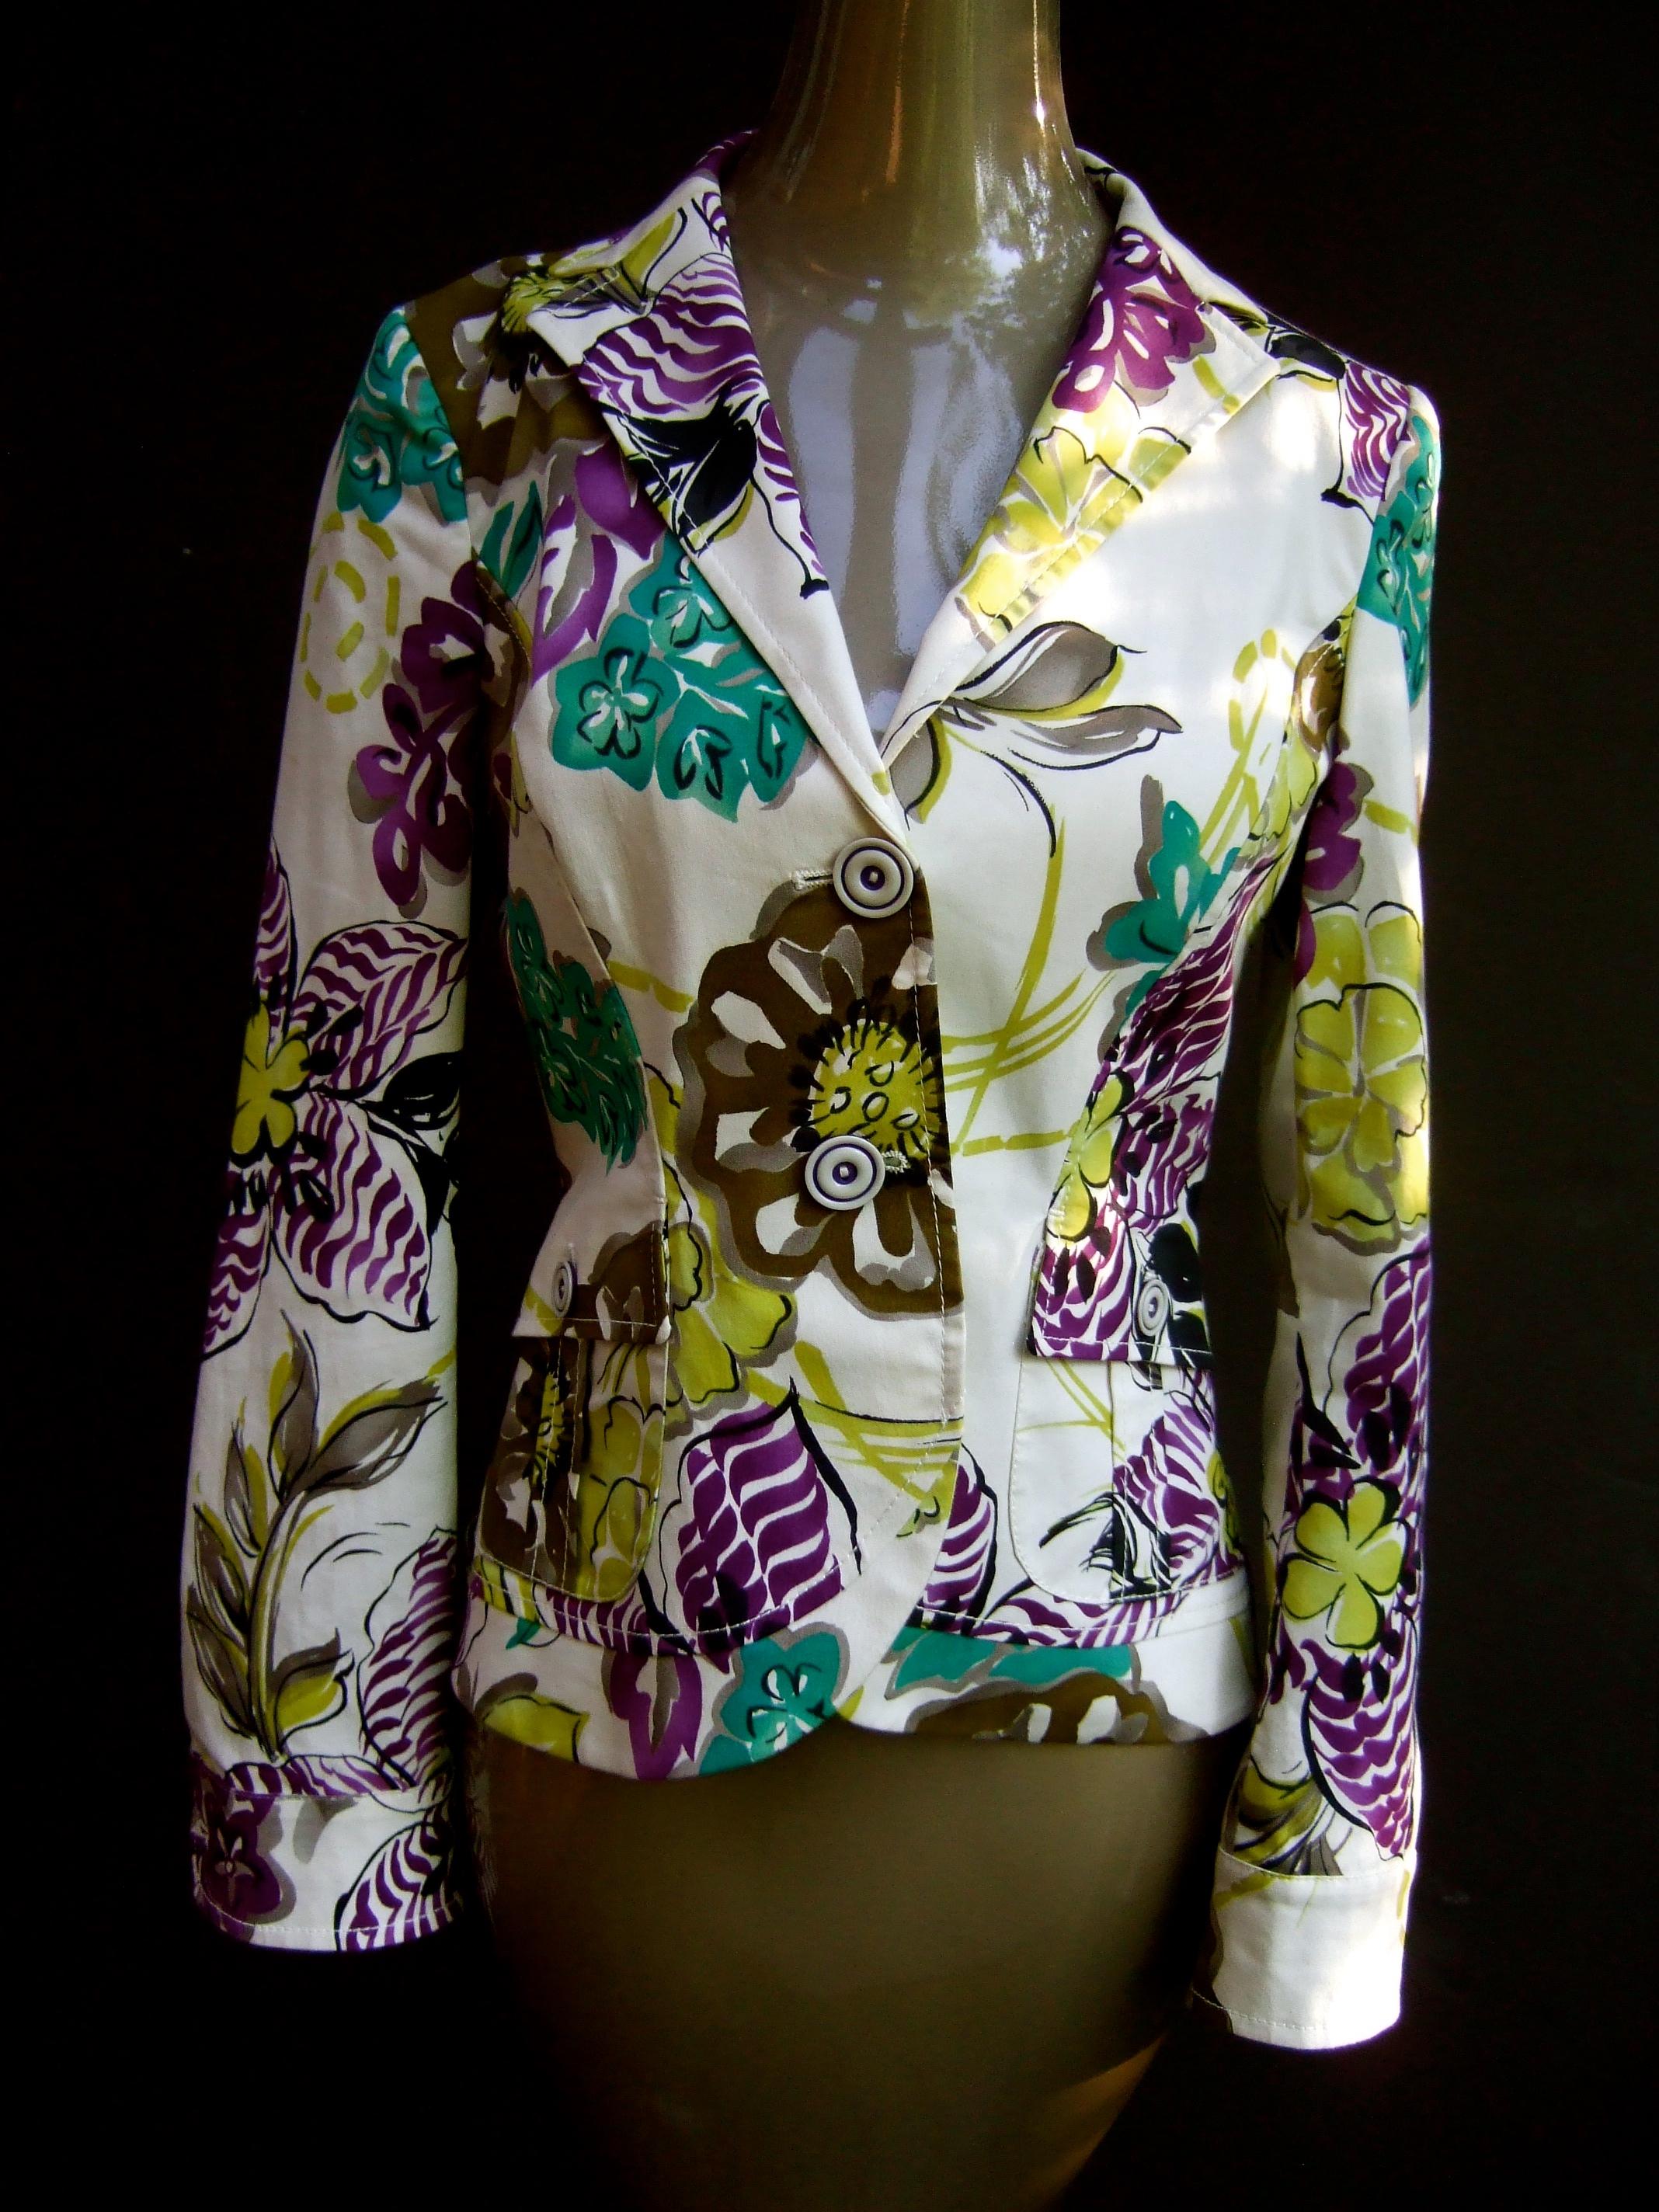 Etro Milano Knackige lebendige Blumendruck Baumwolle Jacke Größe 42 
Entworfen mit einem Paar verdeckter Klappentaschen 
Gefüttert mit vertikalen Streifen in Violett und Chartreuse
Die Rückseite wird mit einer verstellbaren Schnalle verschlossen